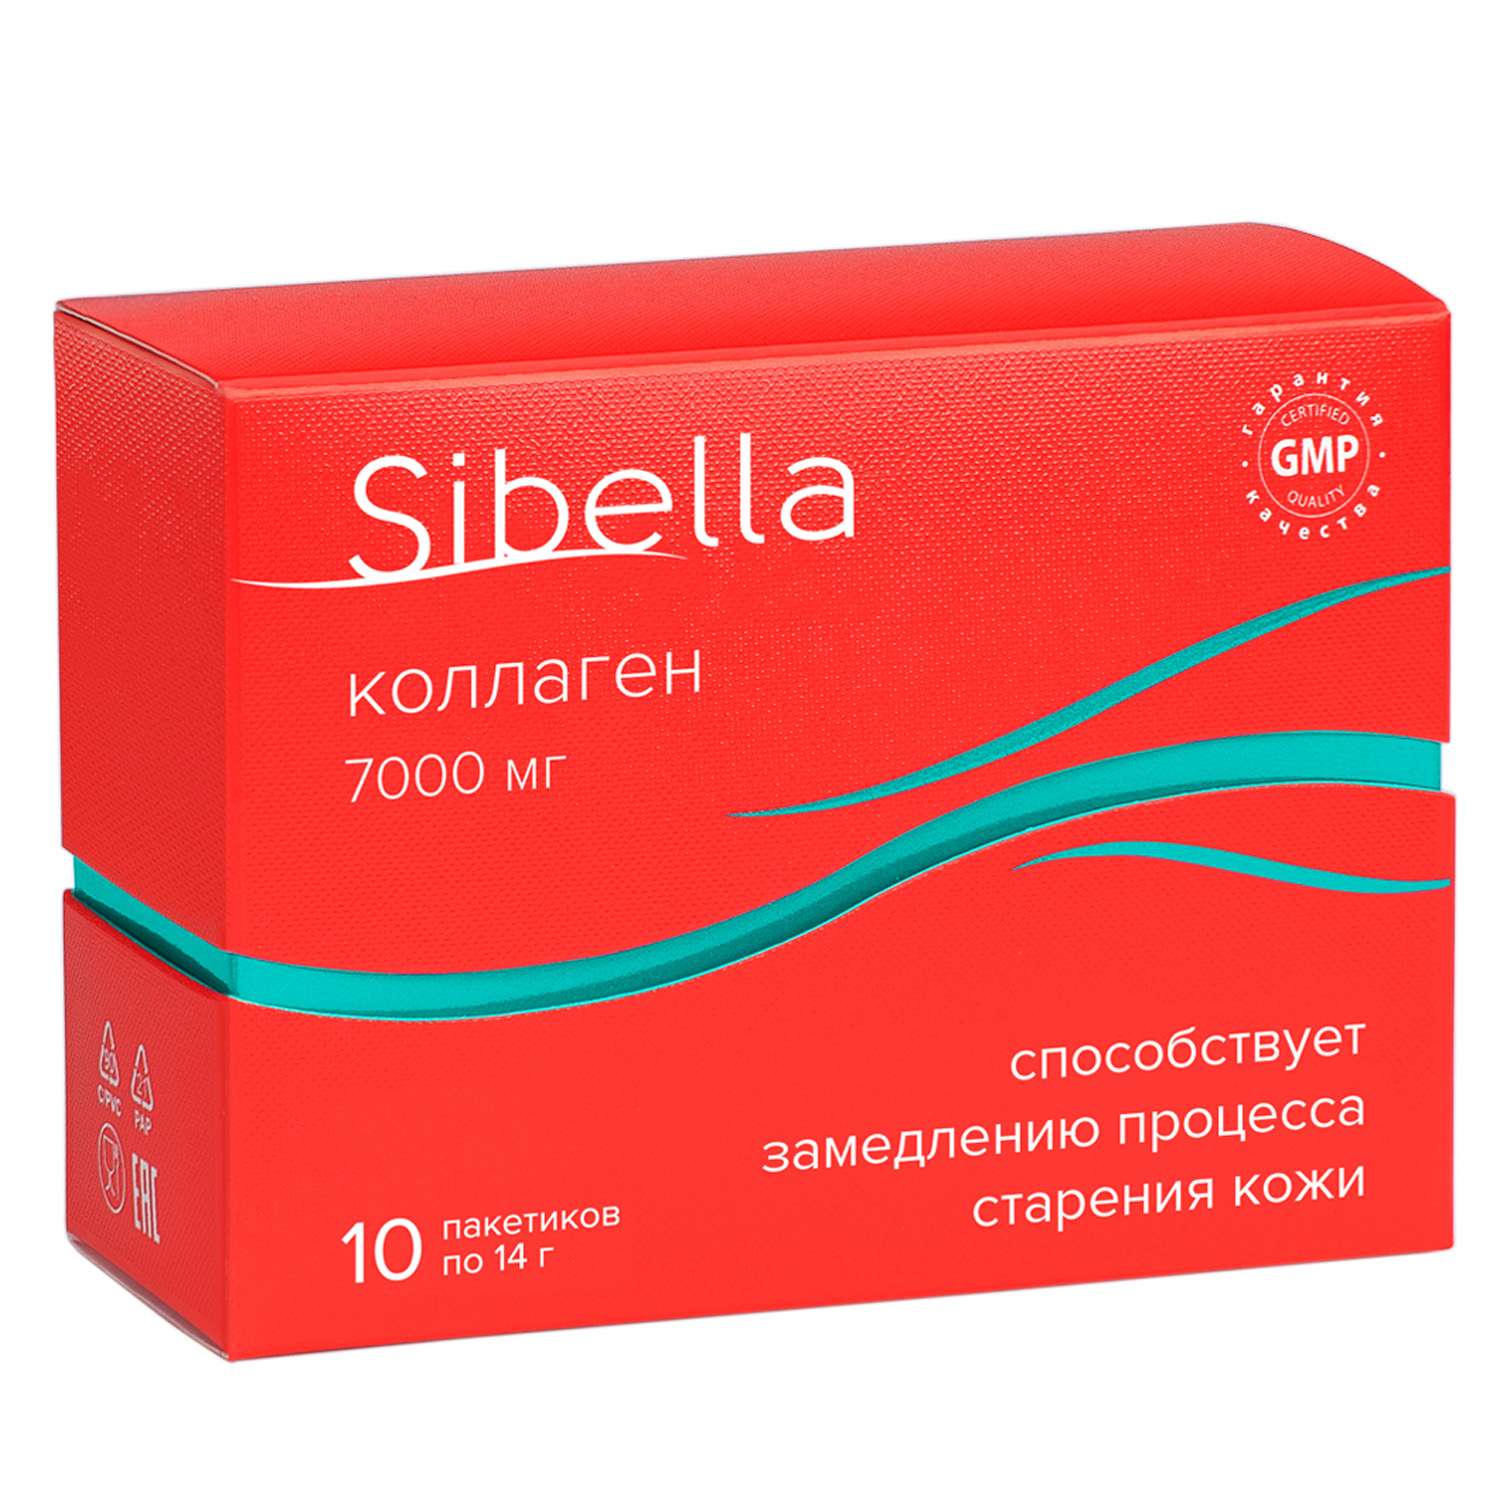 Sibella Коллаген порошок 14г*10пакетиков - фото 1